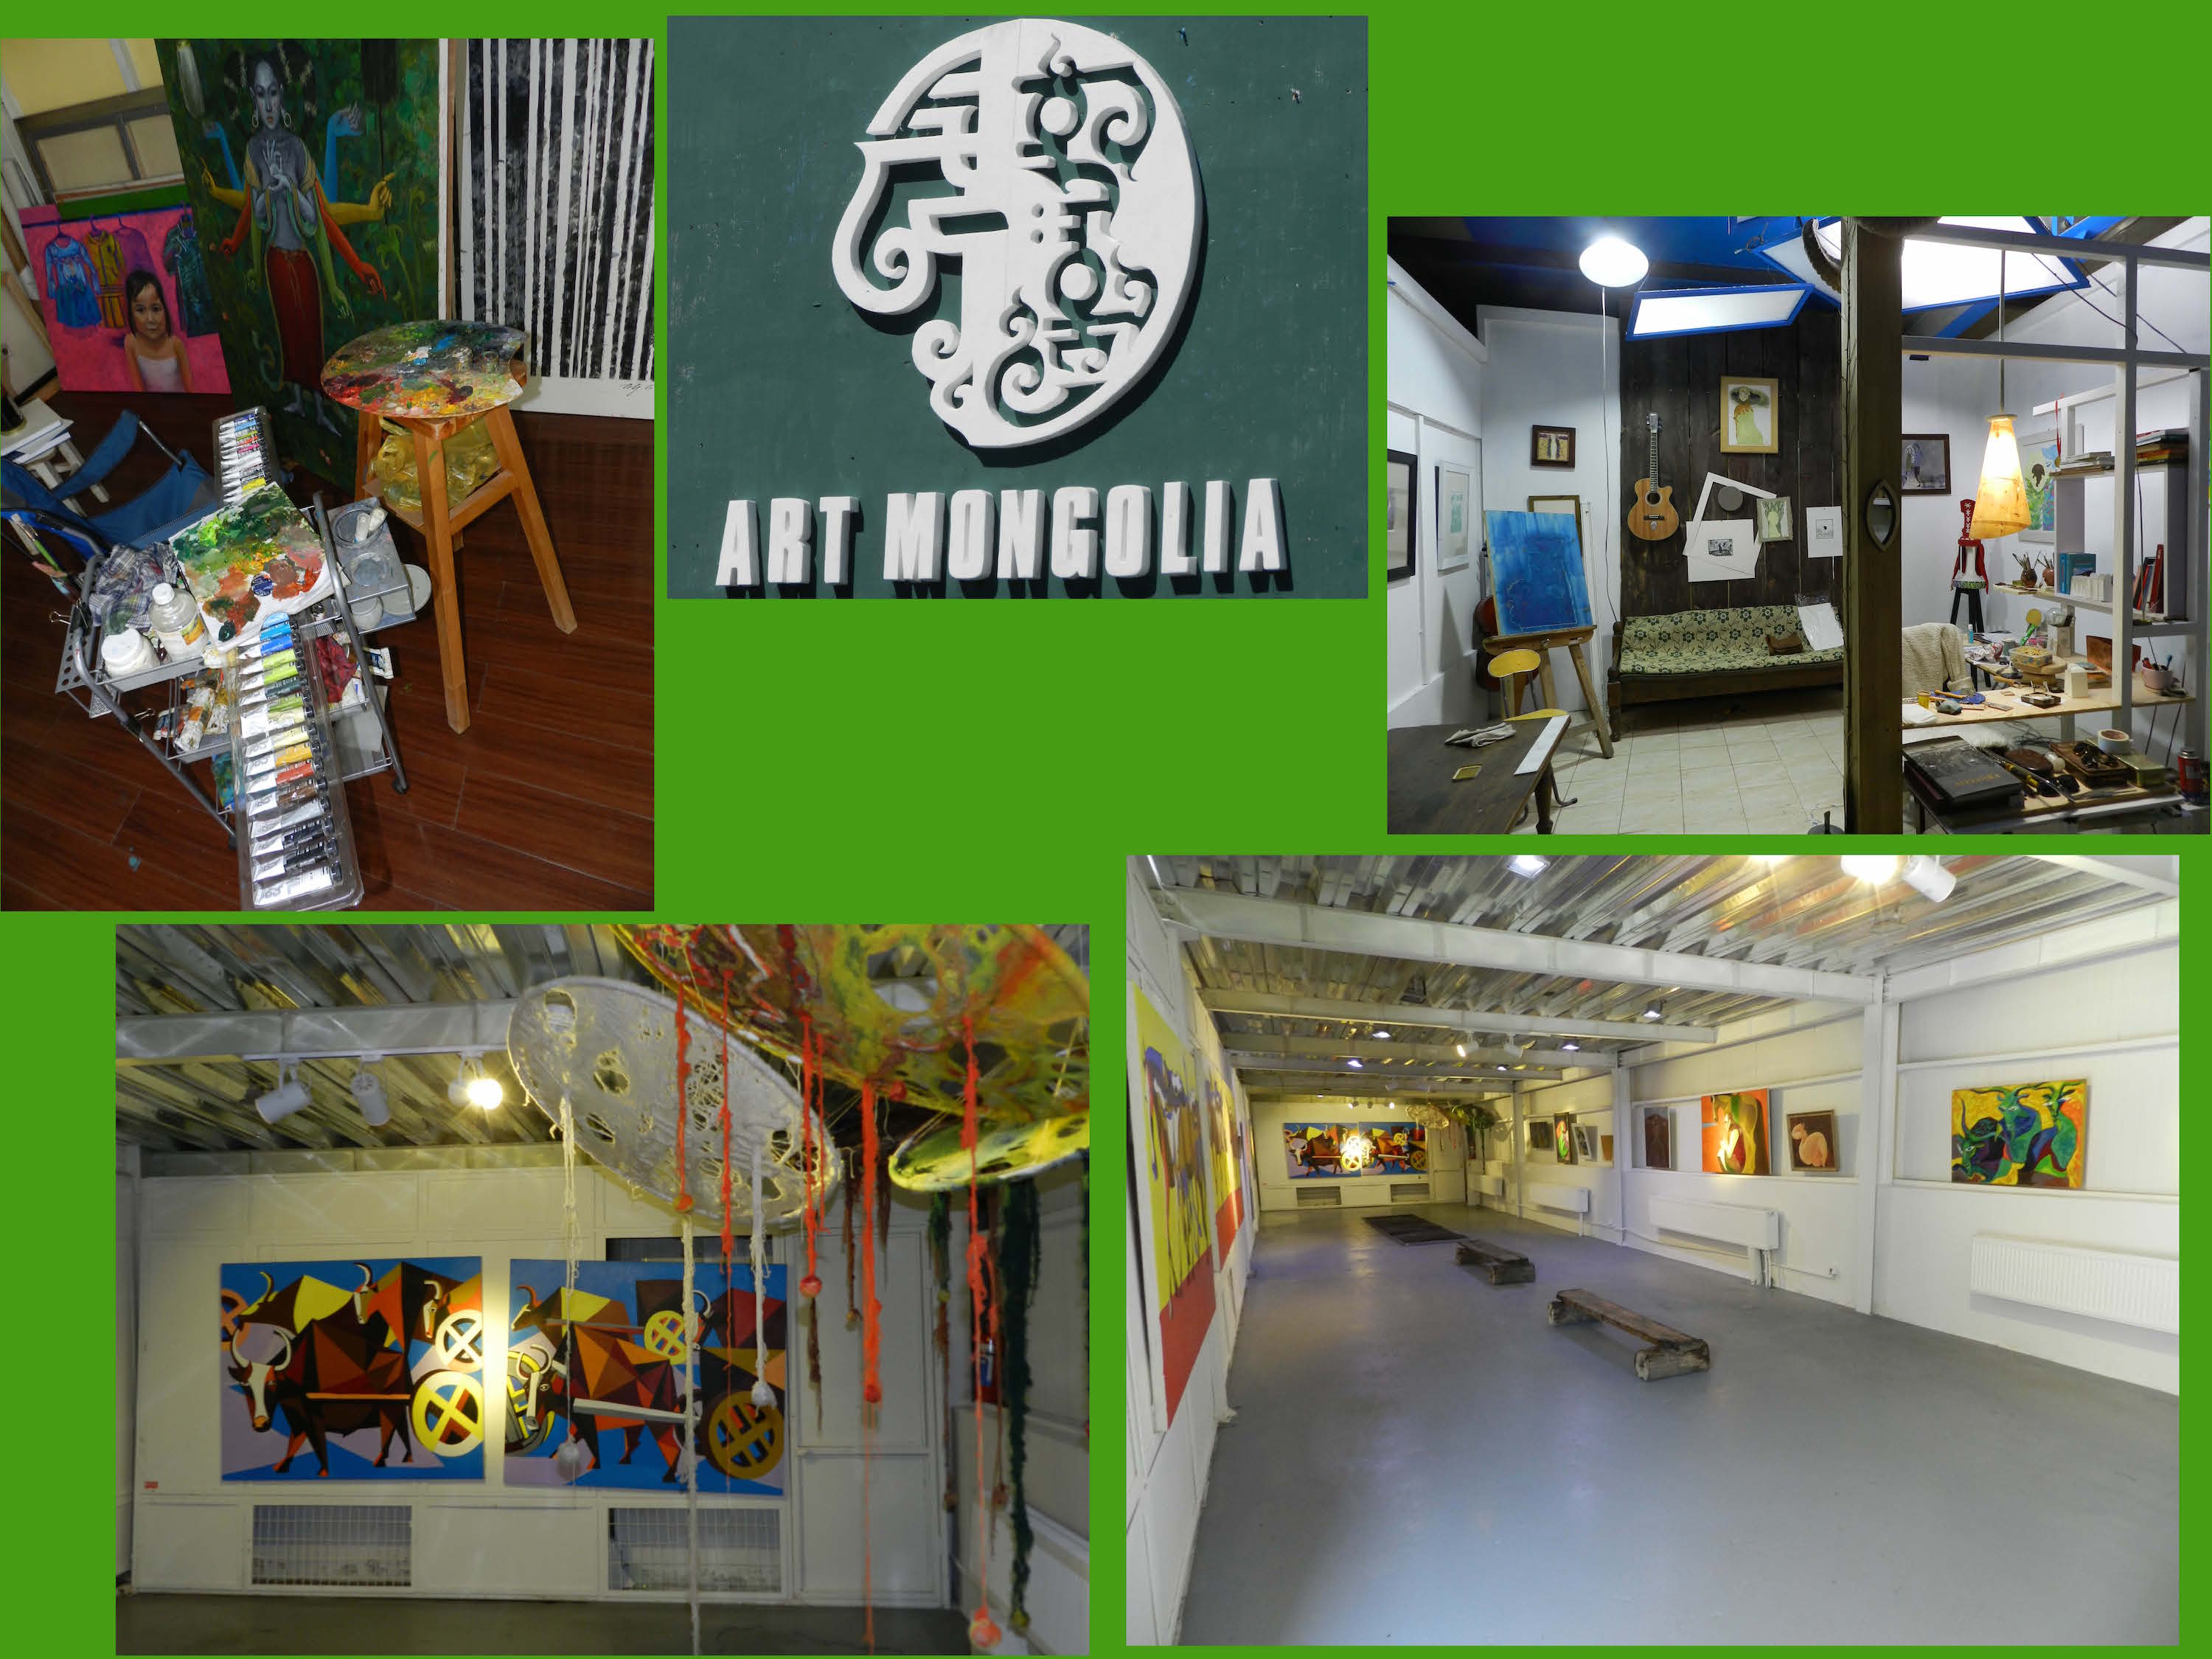 Einige Ansichten des Künstlerzentrums ART Mongolia